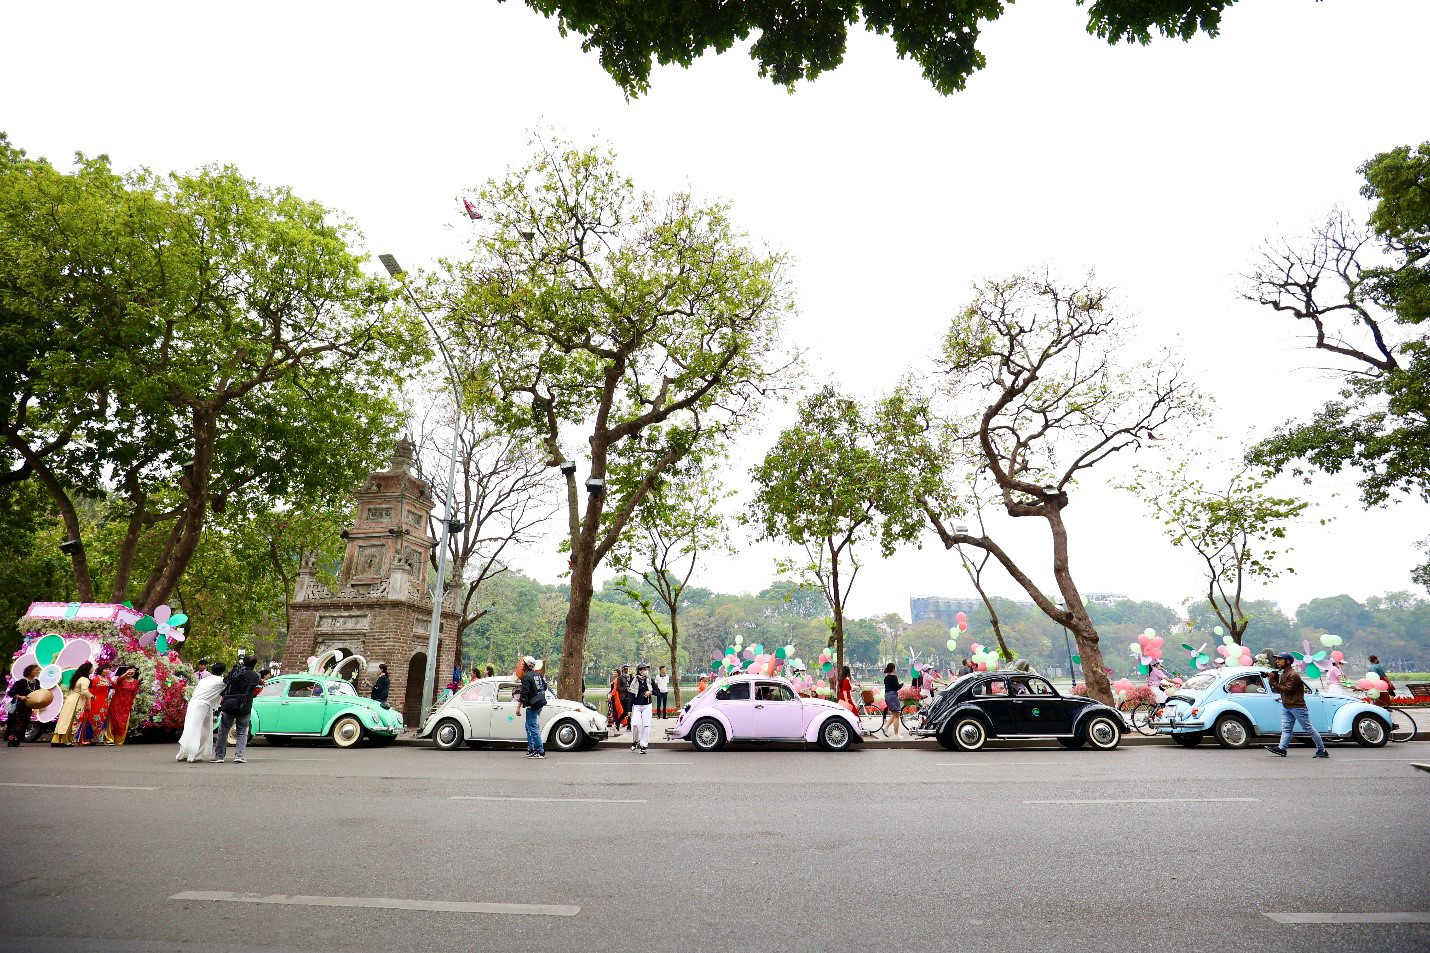 Người dân thủ đô thích thú khi thấy những ôtô nhỏ được &amp;quot;biến hình&amp;quot; thành những chú thỏ, chú lợn xinh xắn